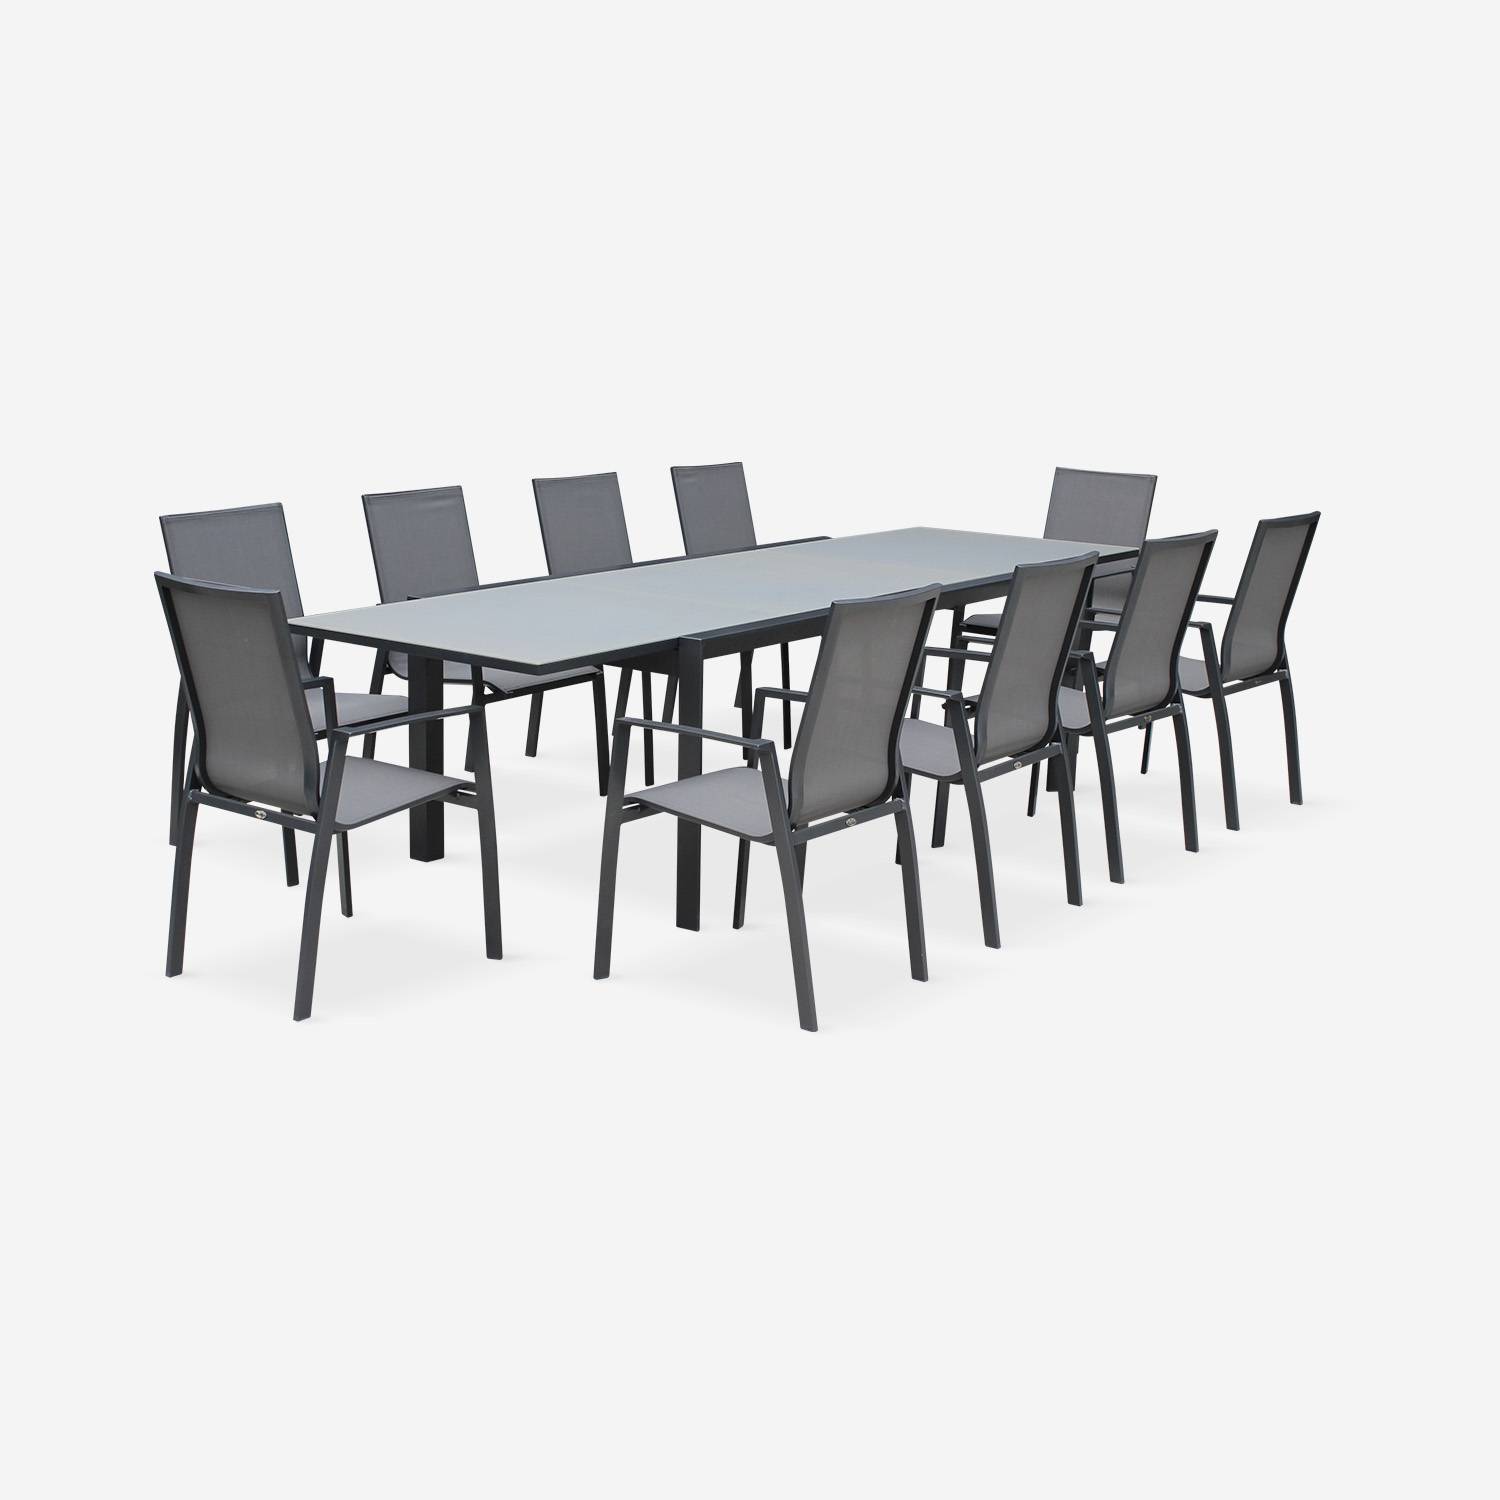 Coppia di sedie Washington Antracite/ Grigio scuro in alluminio antracite e textilene colore grigio scuro, impilabili Photo5